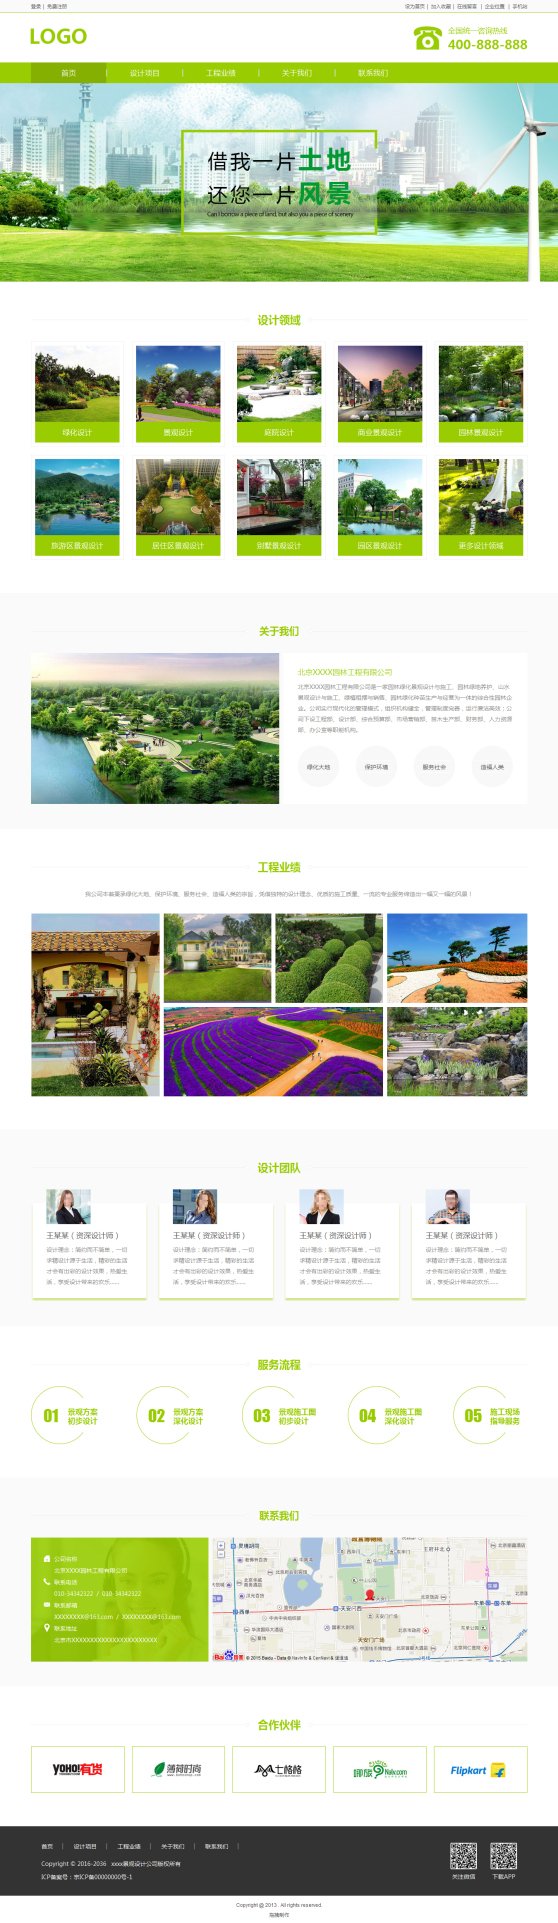 专业景观设计公司网页模板